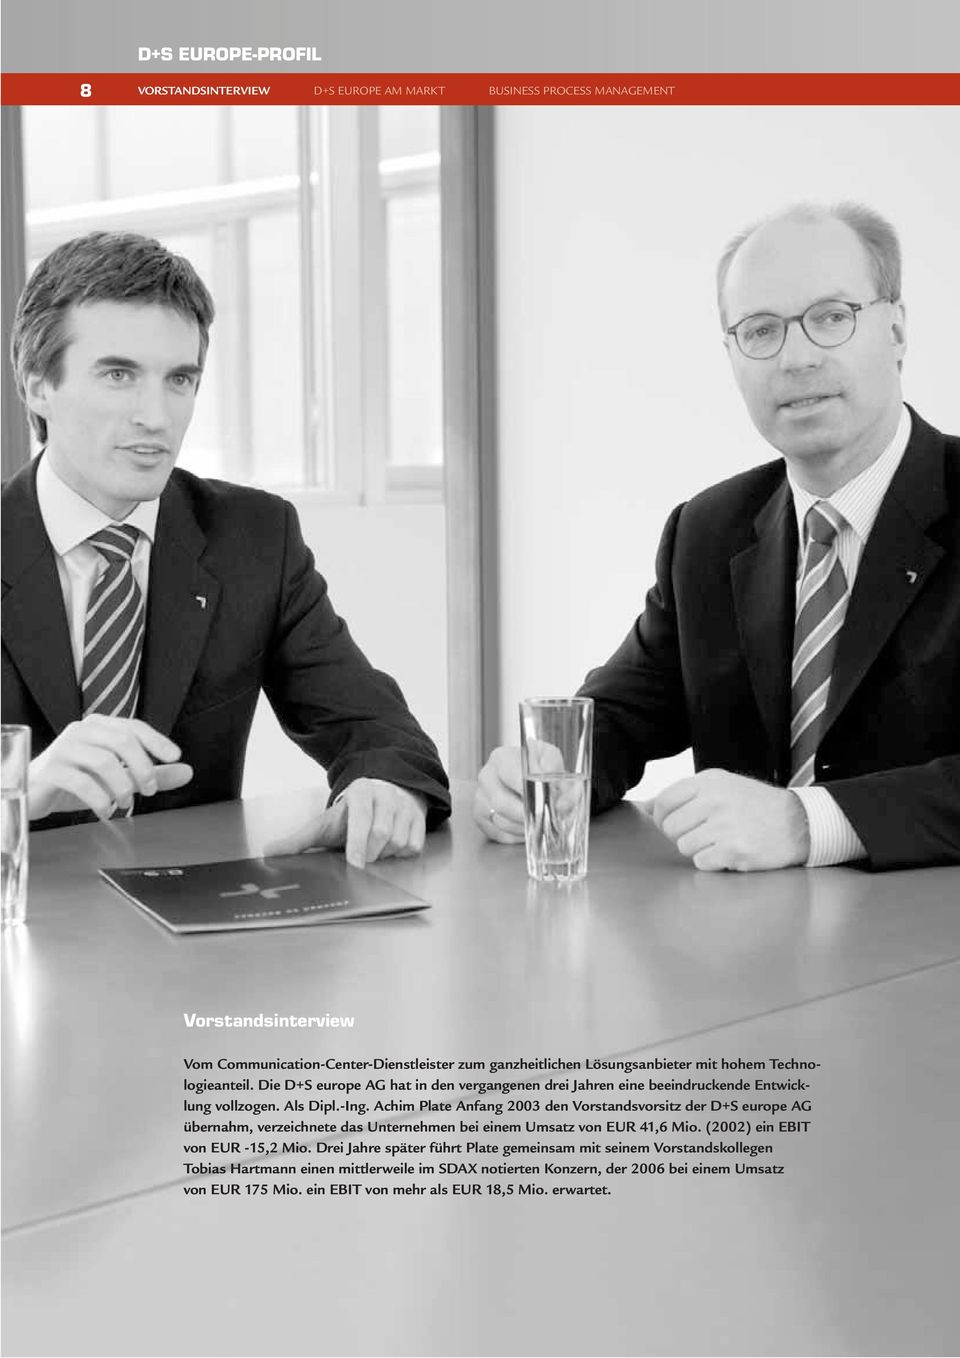 Achim Plate Anfang 2003 den Vorstandsvorsitz der D+S europe AG übernahm, verzeichnete das Unternehmen bei einem Umsatz von EUR 41,6 Mio. (2002) ein EBIT von EUR -15,2 Mio.